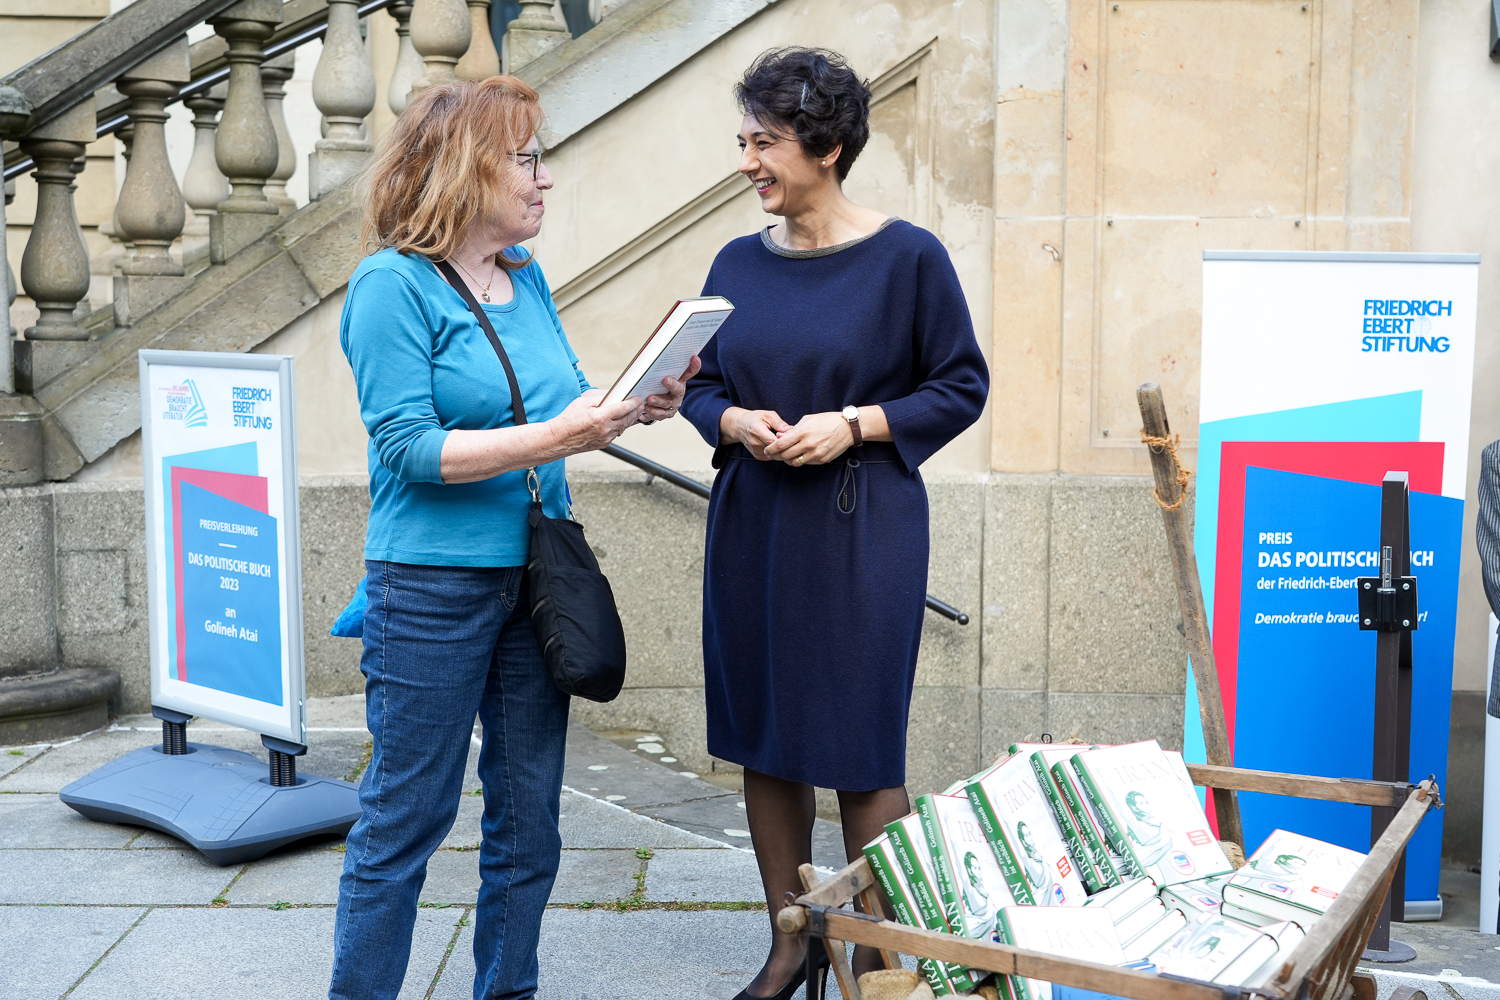 Die Preisträgerin des Politischen Buches 2023 Golineh Atai im Austausch mit einer Passantin, die ein Buch in der hand hält. Die beiden stehen vor einer Steintreppe, neben sich ein Holzkarren voller Bücher und ein Roll-Up der Friedrich-Ebert-Stiftung.